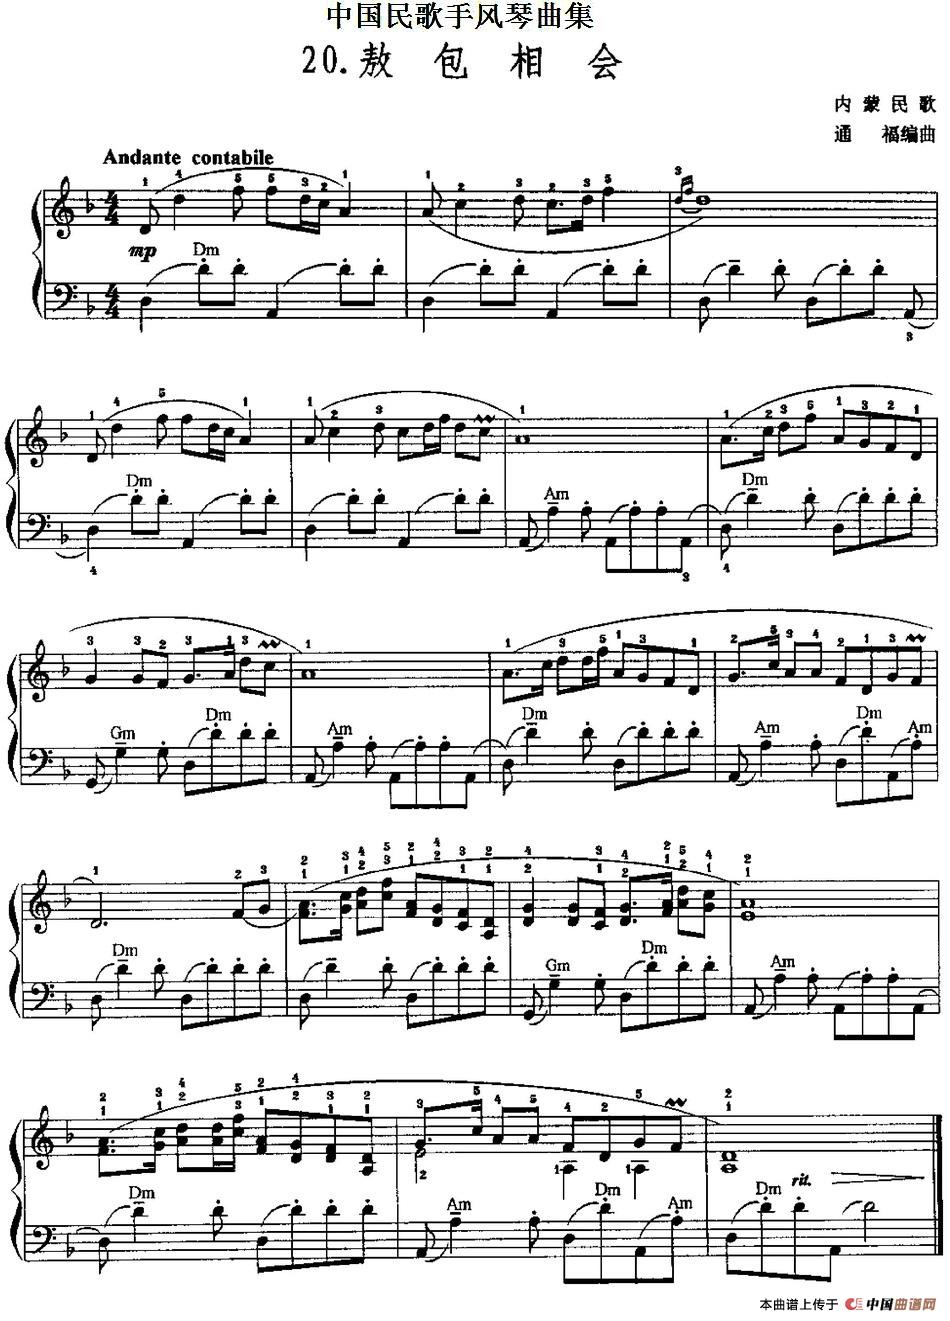 中国民歌手风琴曲集：20、敖包相会手风琴谱（线简谱对照、带指法版）